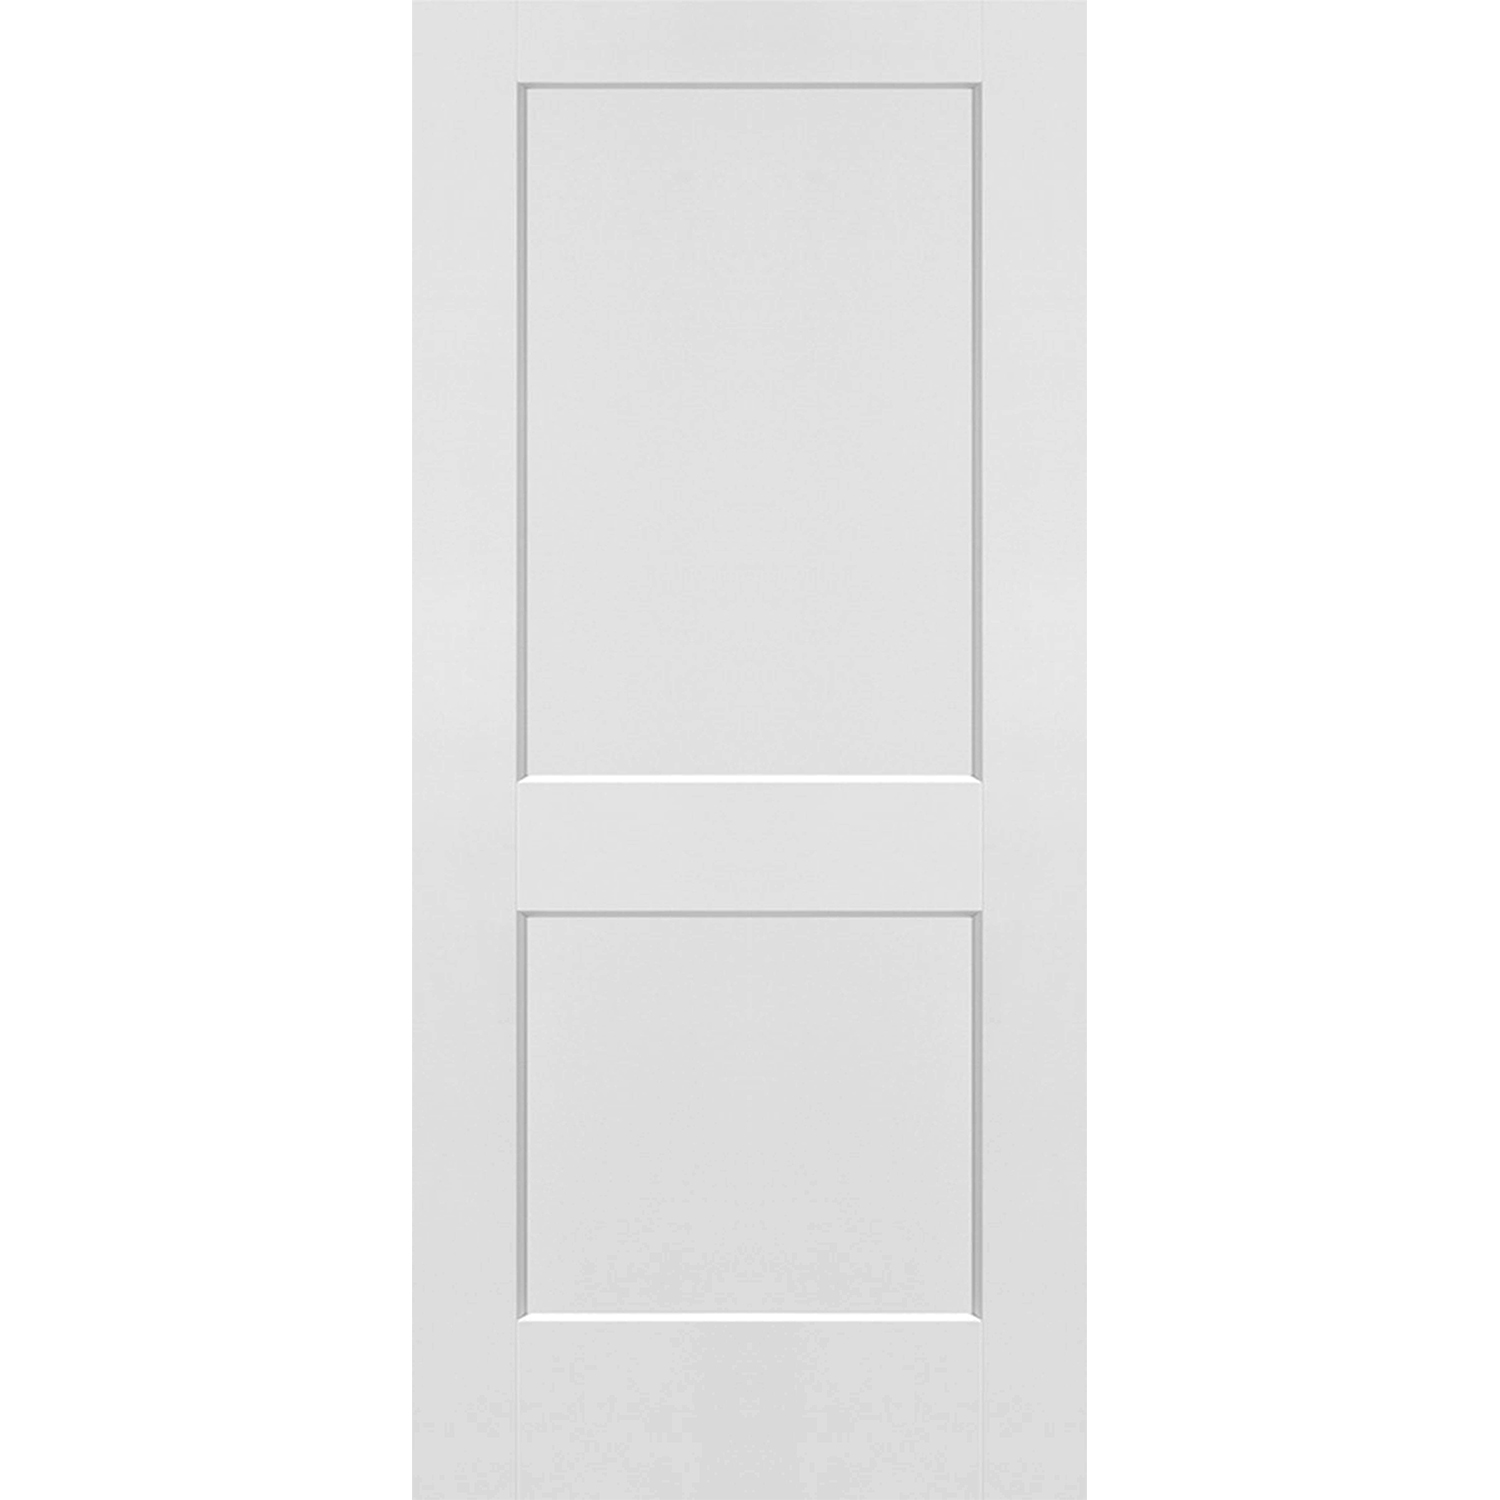 2 Panel Solid Door - 36 x 80